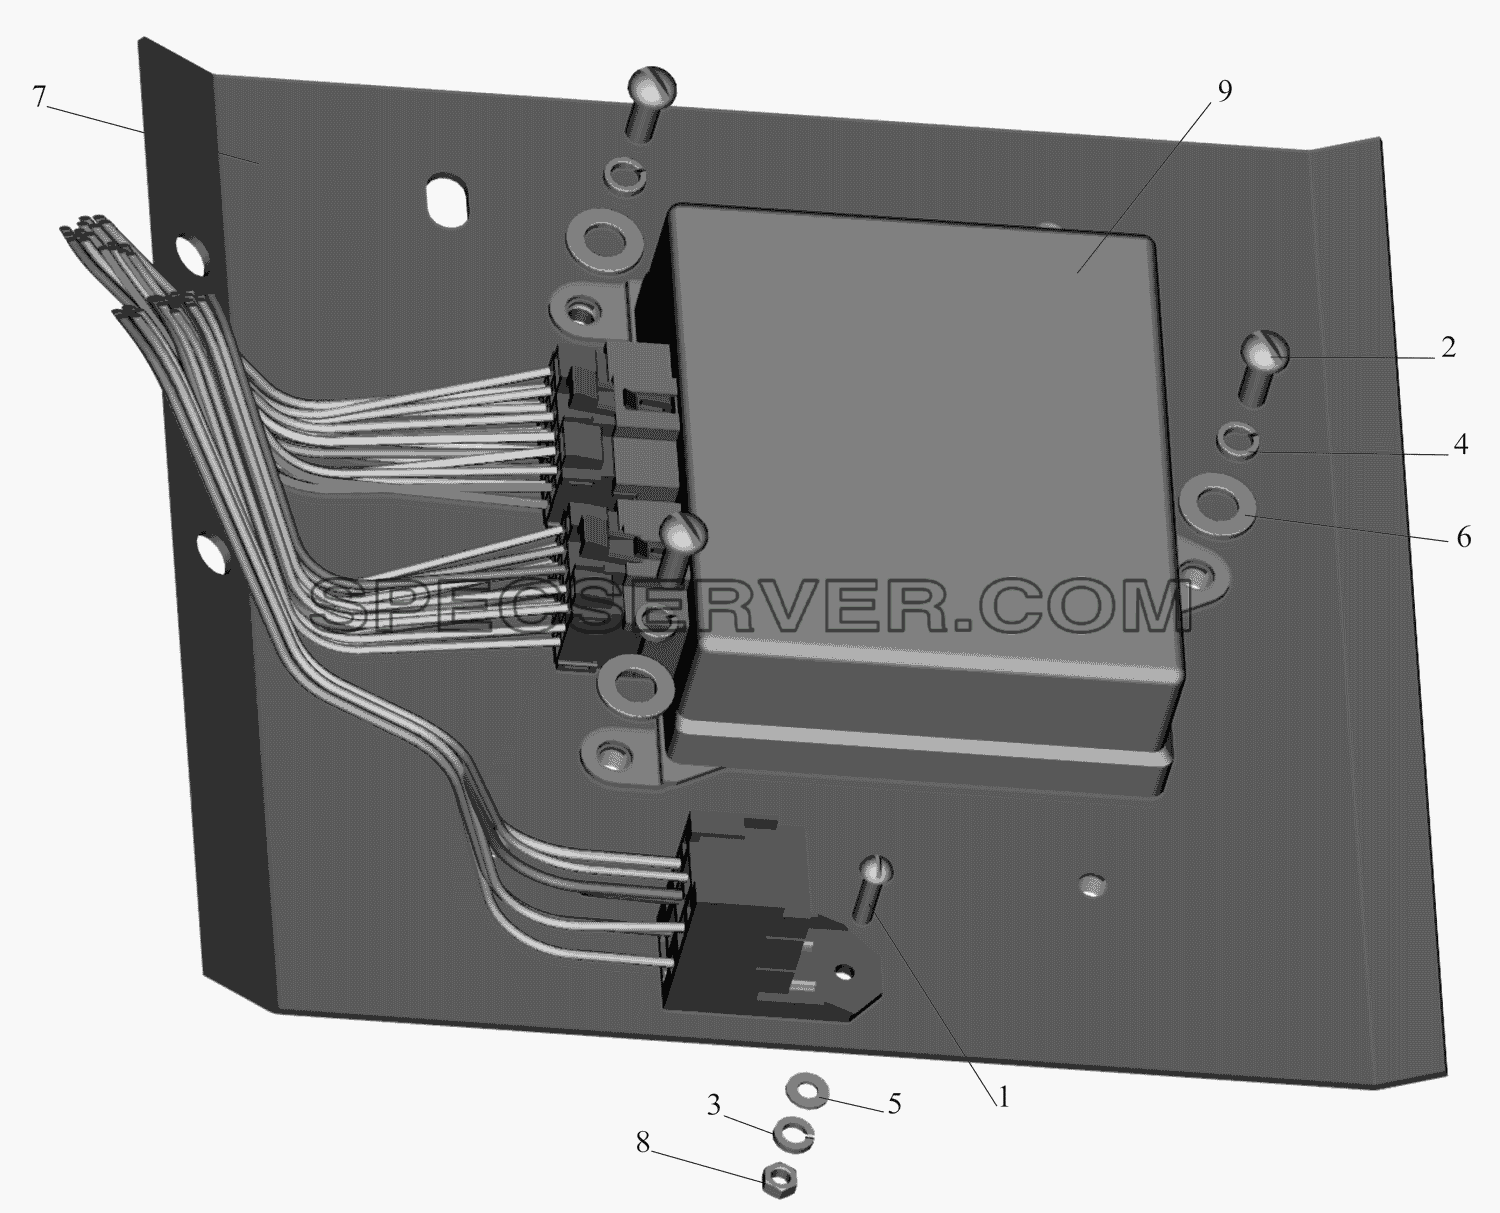 Установка электронного блока АБС на автомобиле без прицепа и ограничения скорости для МАЗ-551669 (список запасных частей)